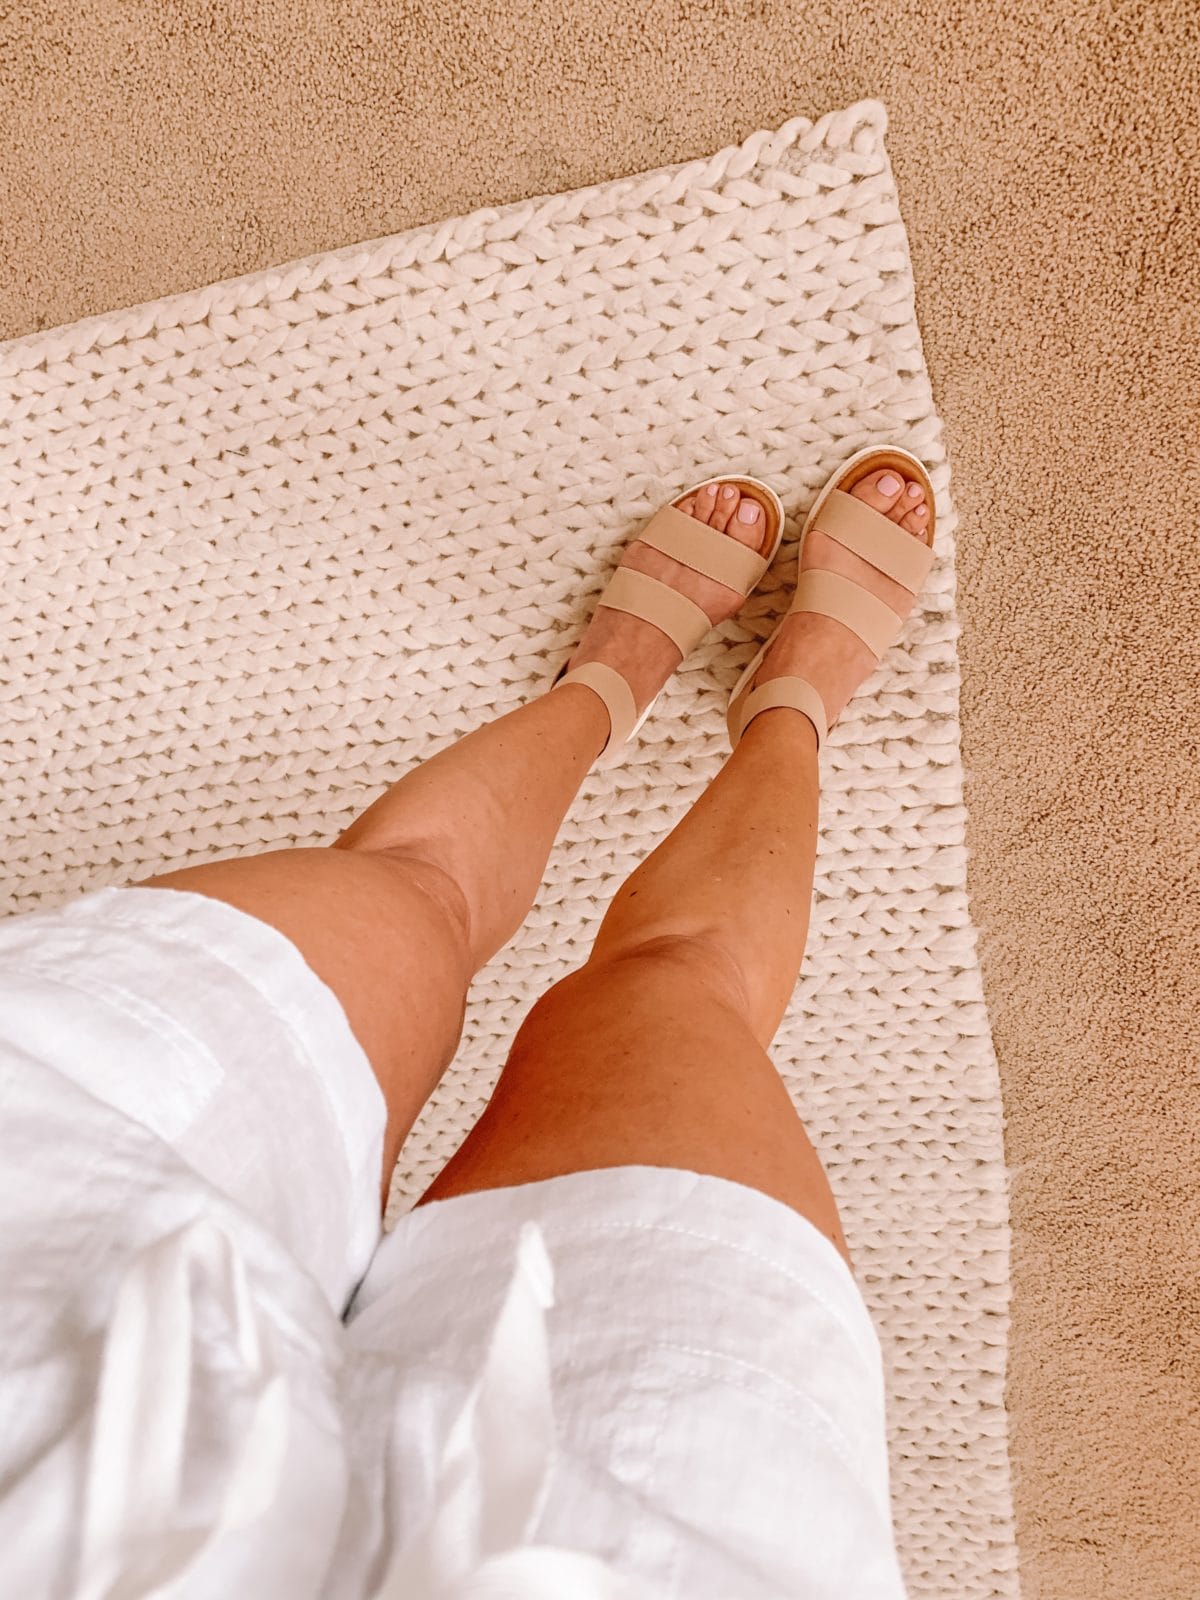 Dressing Room Finds Nordstrom, Platform Sandals, Linen Shorts